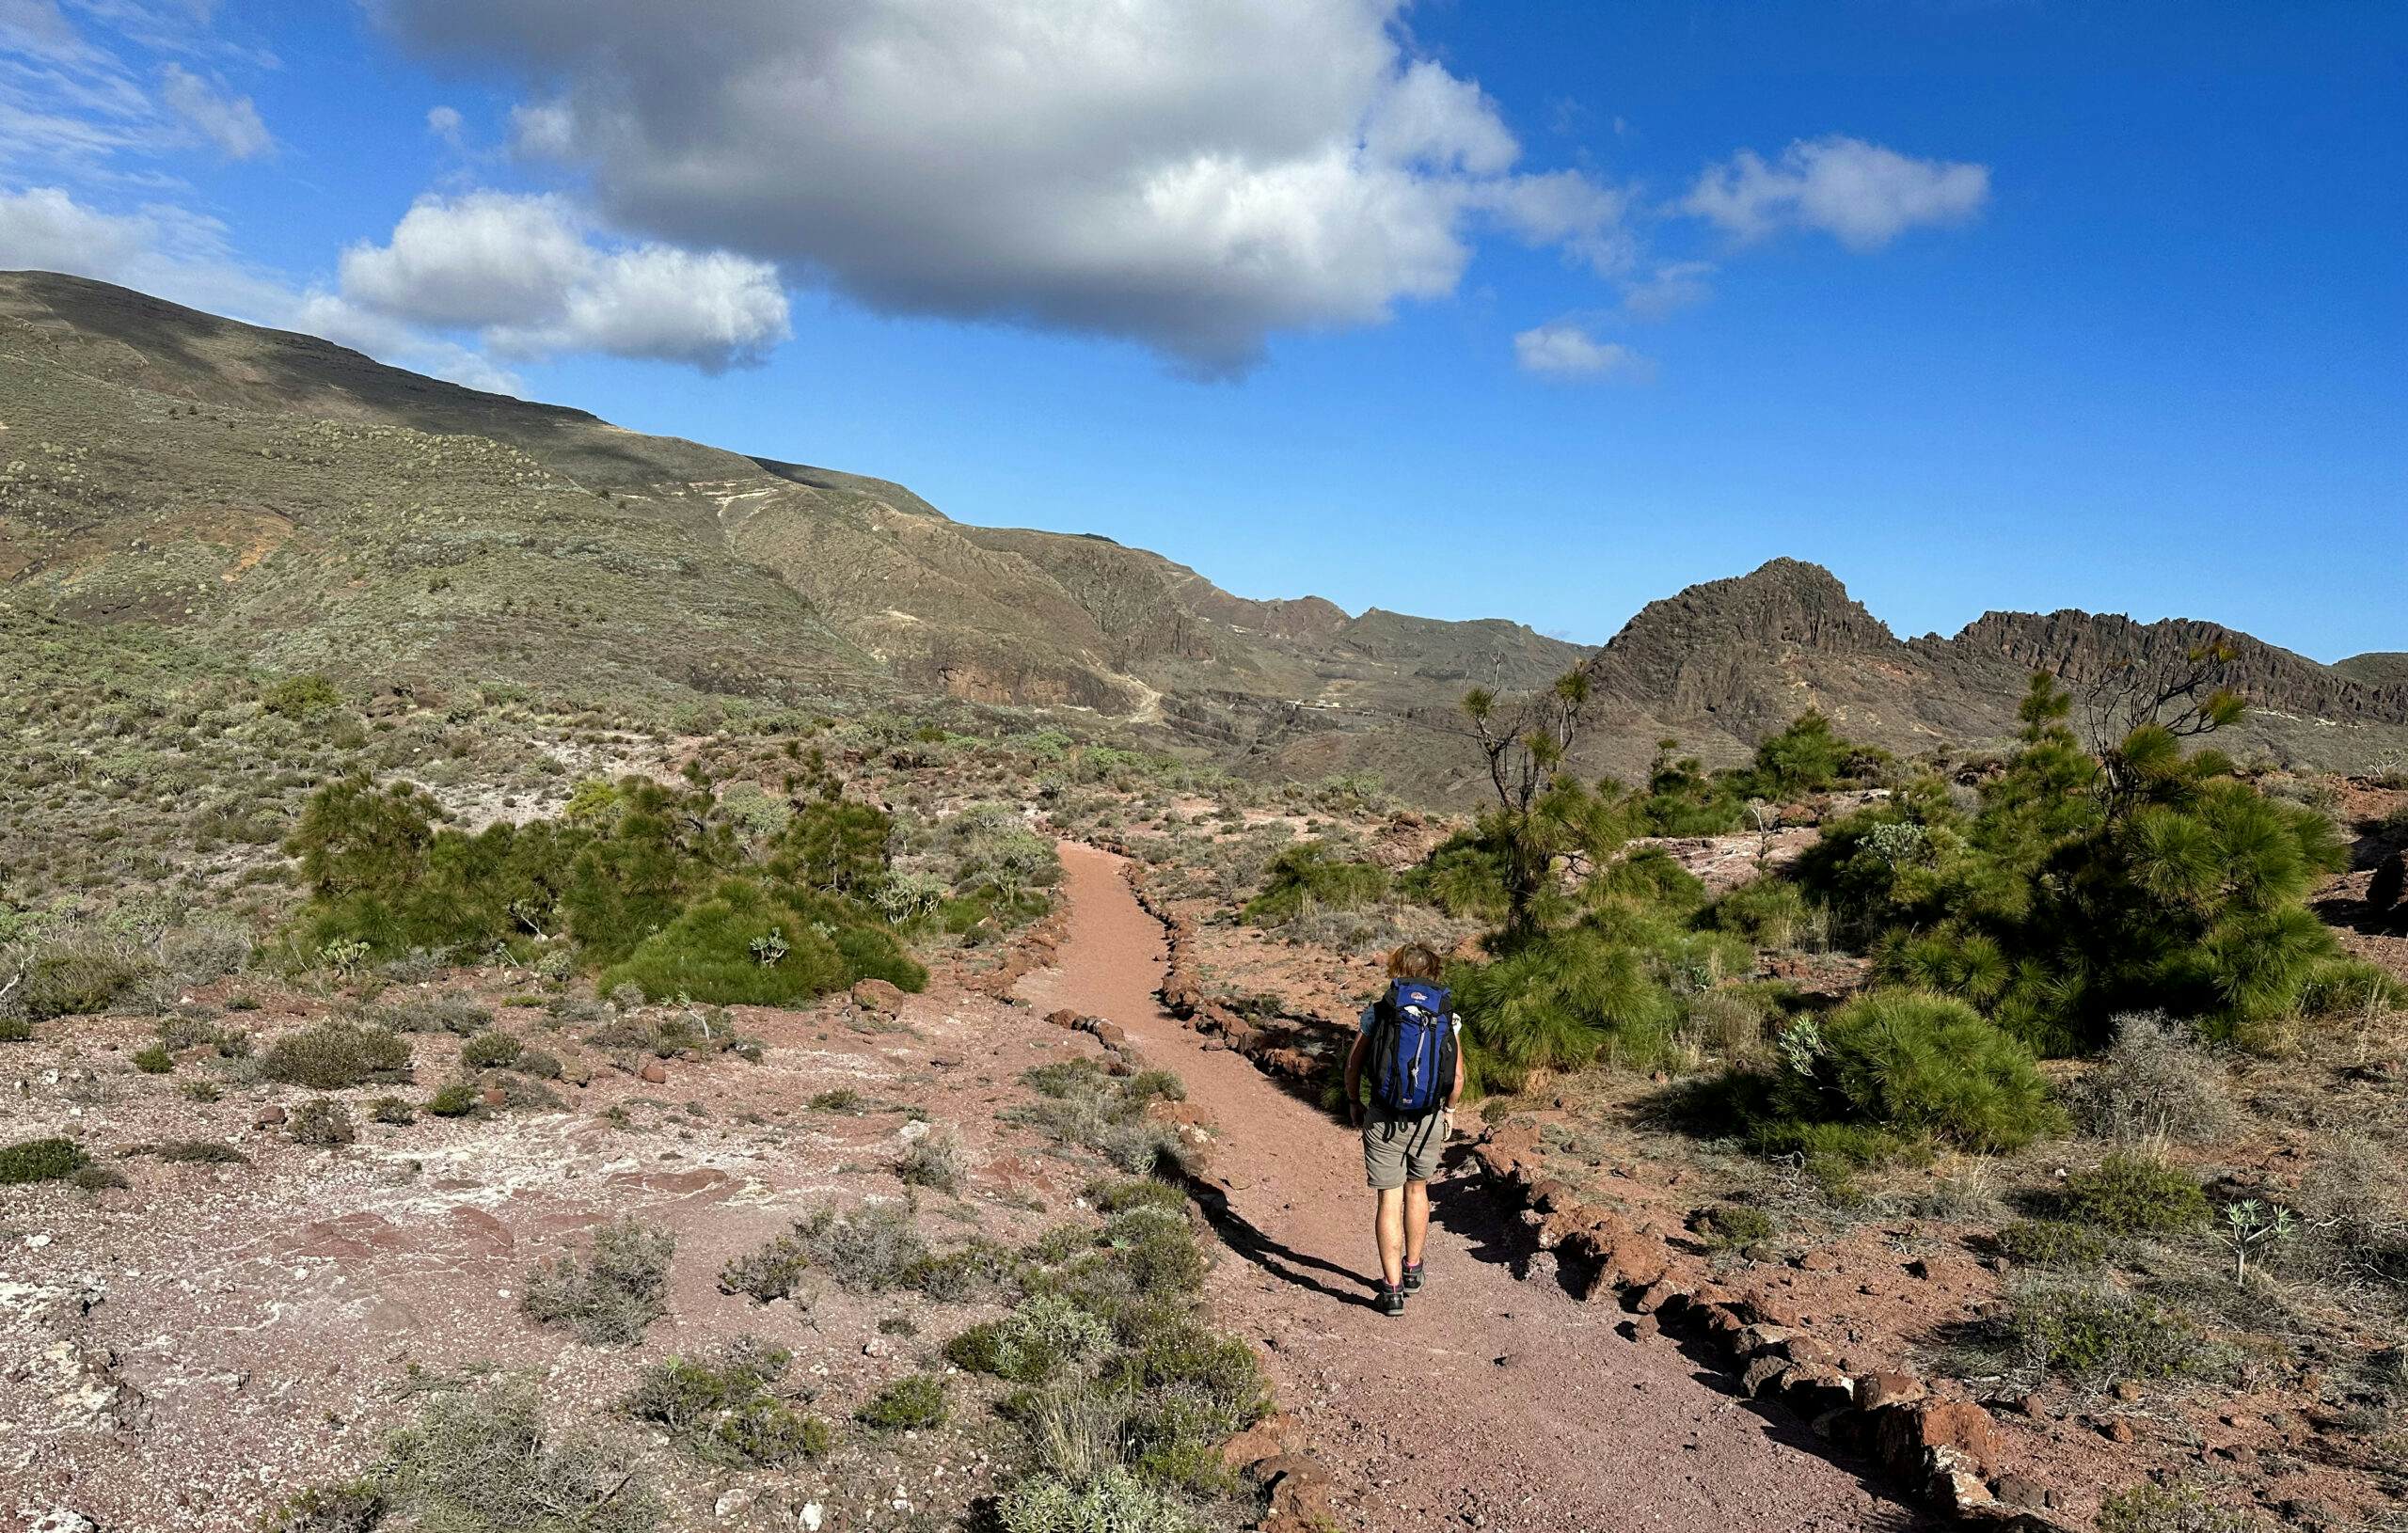 Hiker on the GR-132 long-distance hiking trail across La Gomera